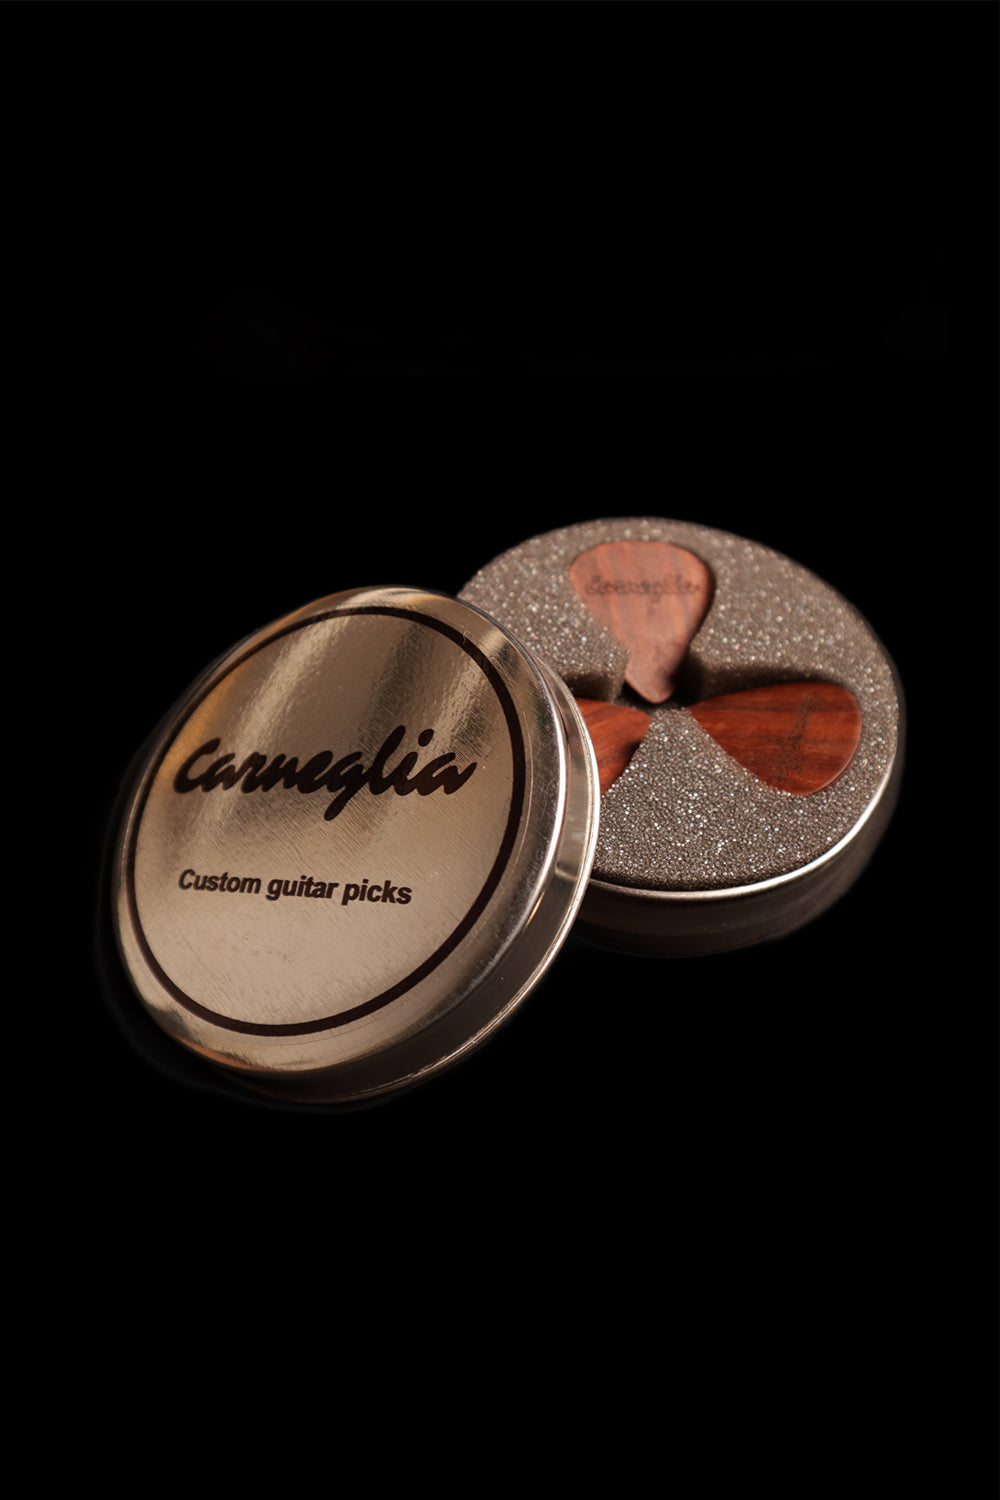 Carneglia Guitar Pick Tin Open 